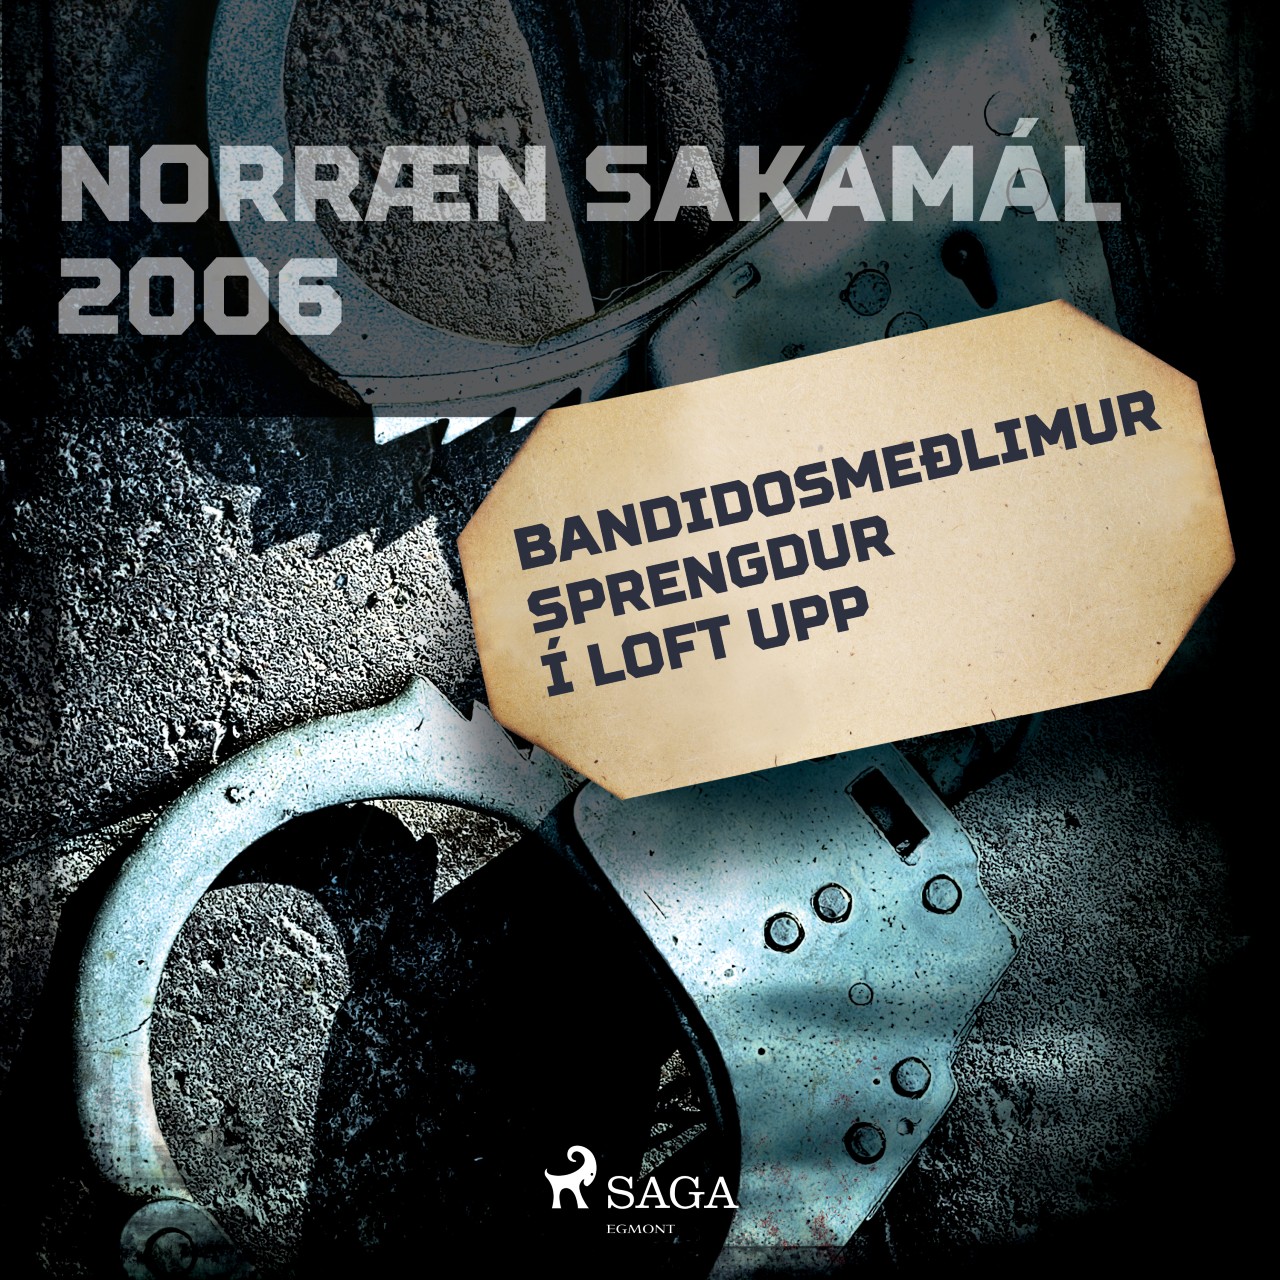 Bandidosmeðlimur sprengdur í loft upp: Norræn sakamál 2006